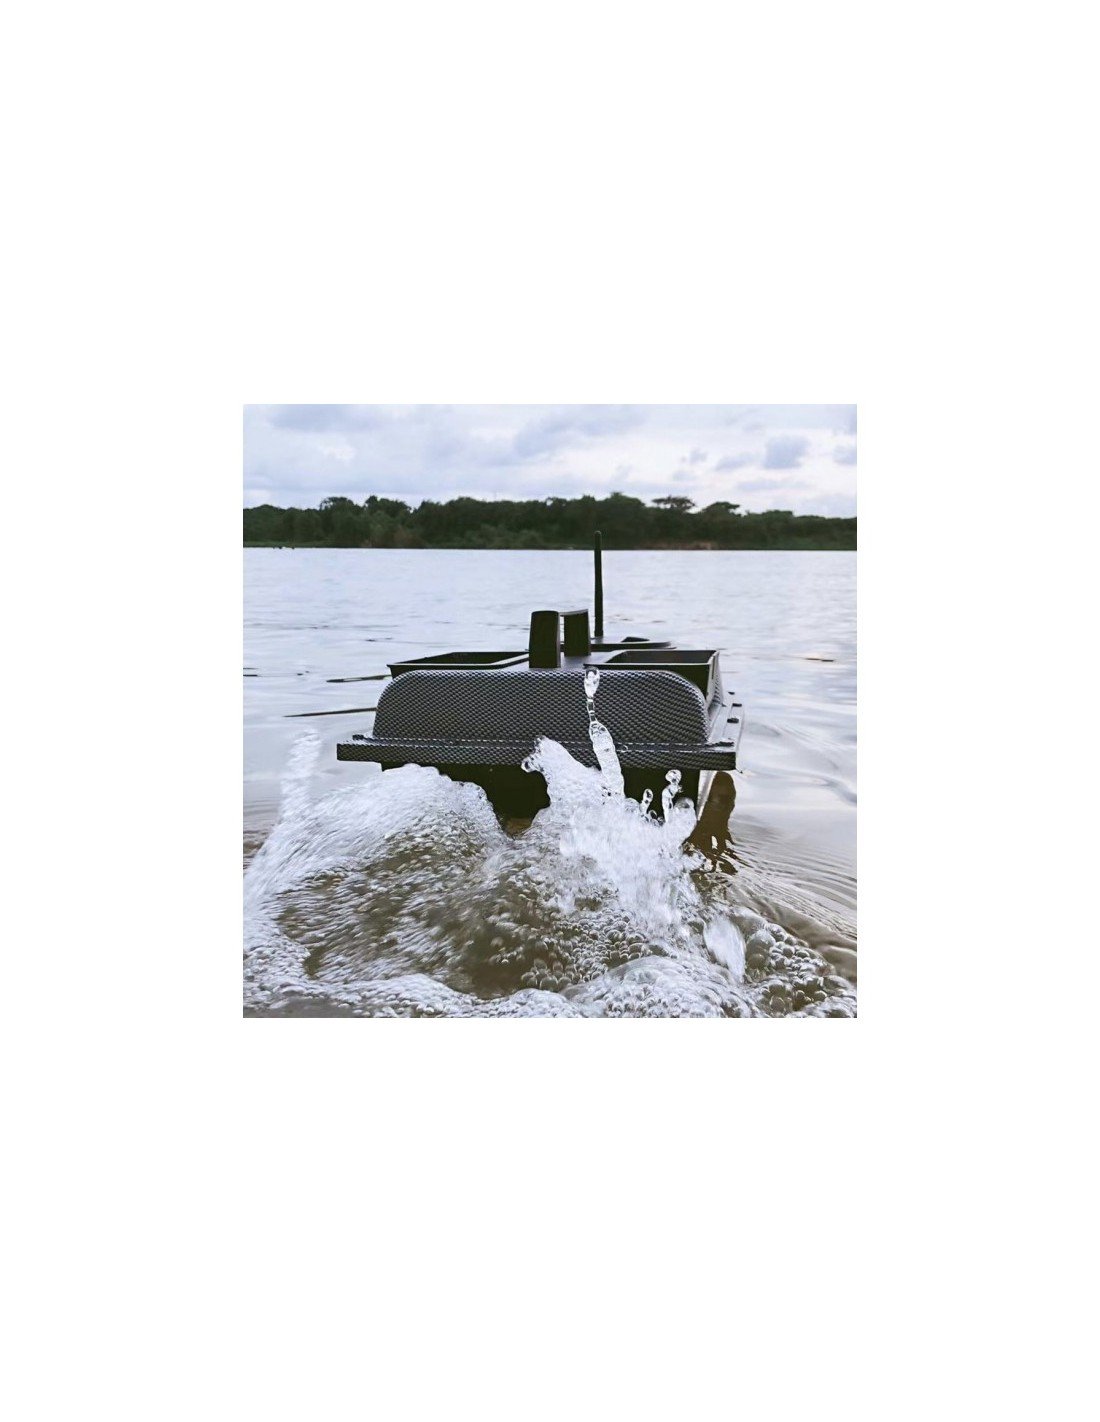 Лодка за захранка Flytec V900 GPS - 40 Точки